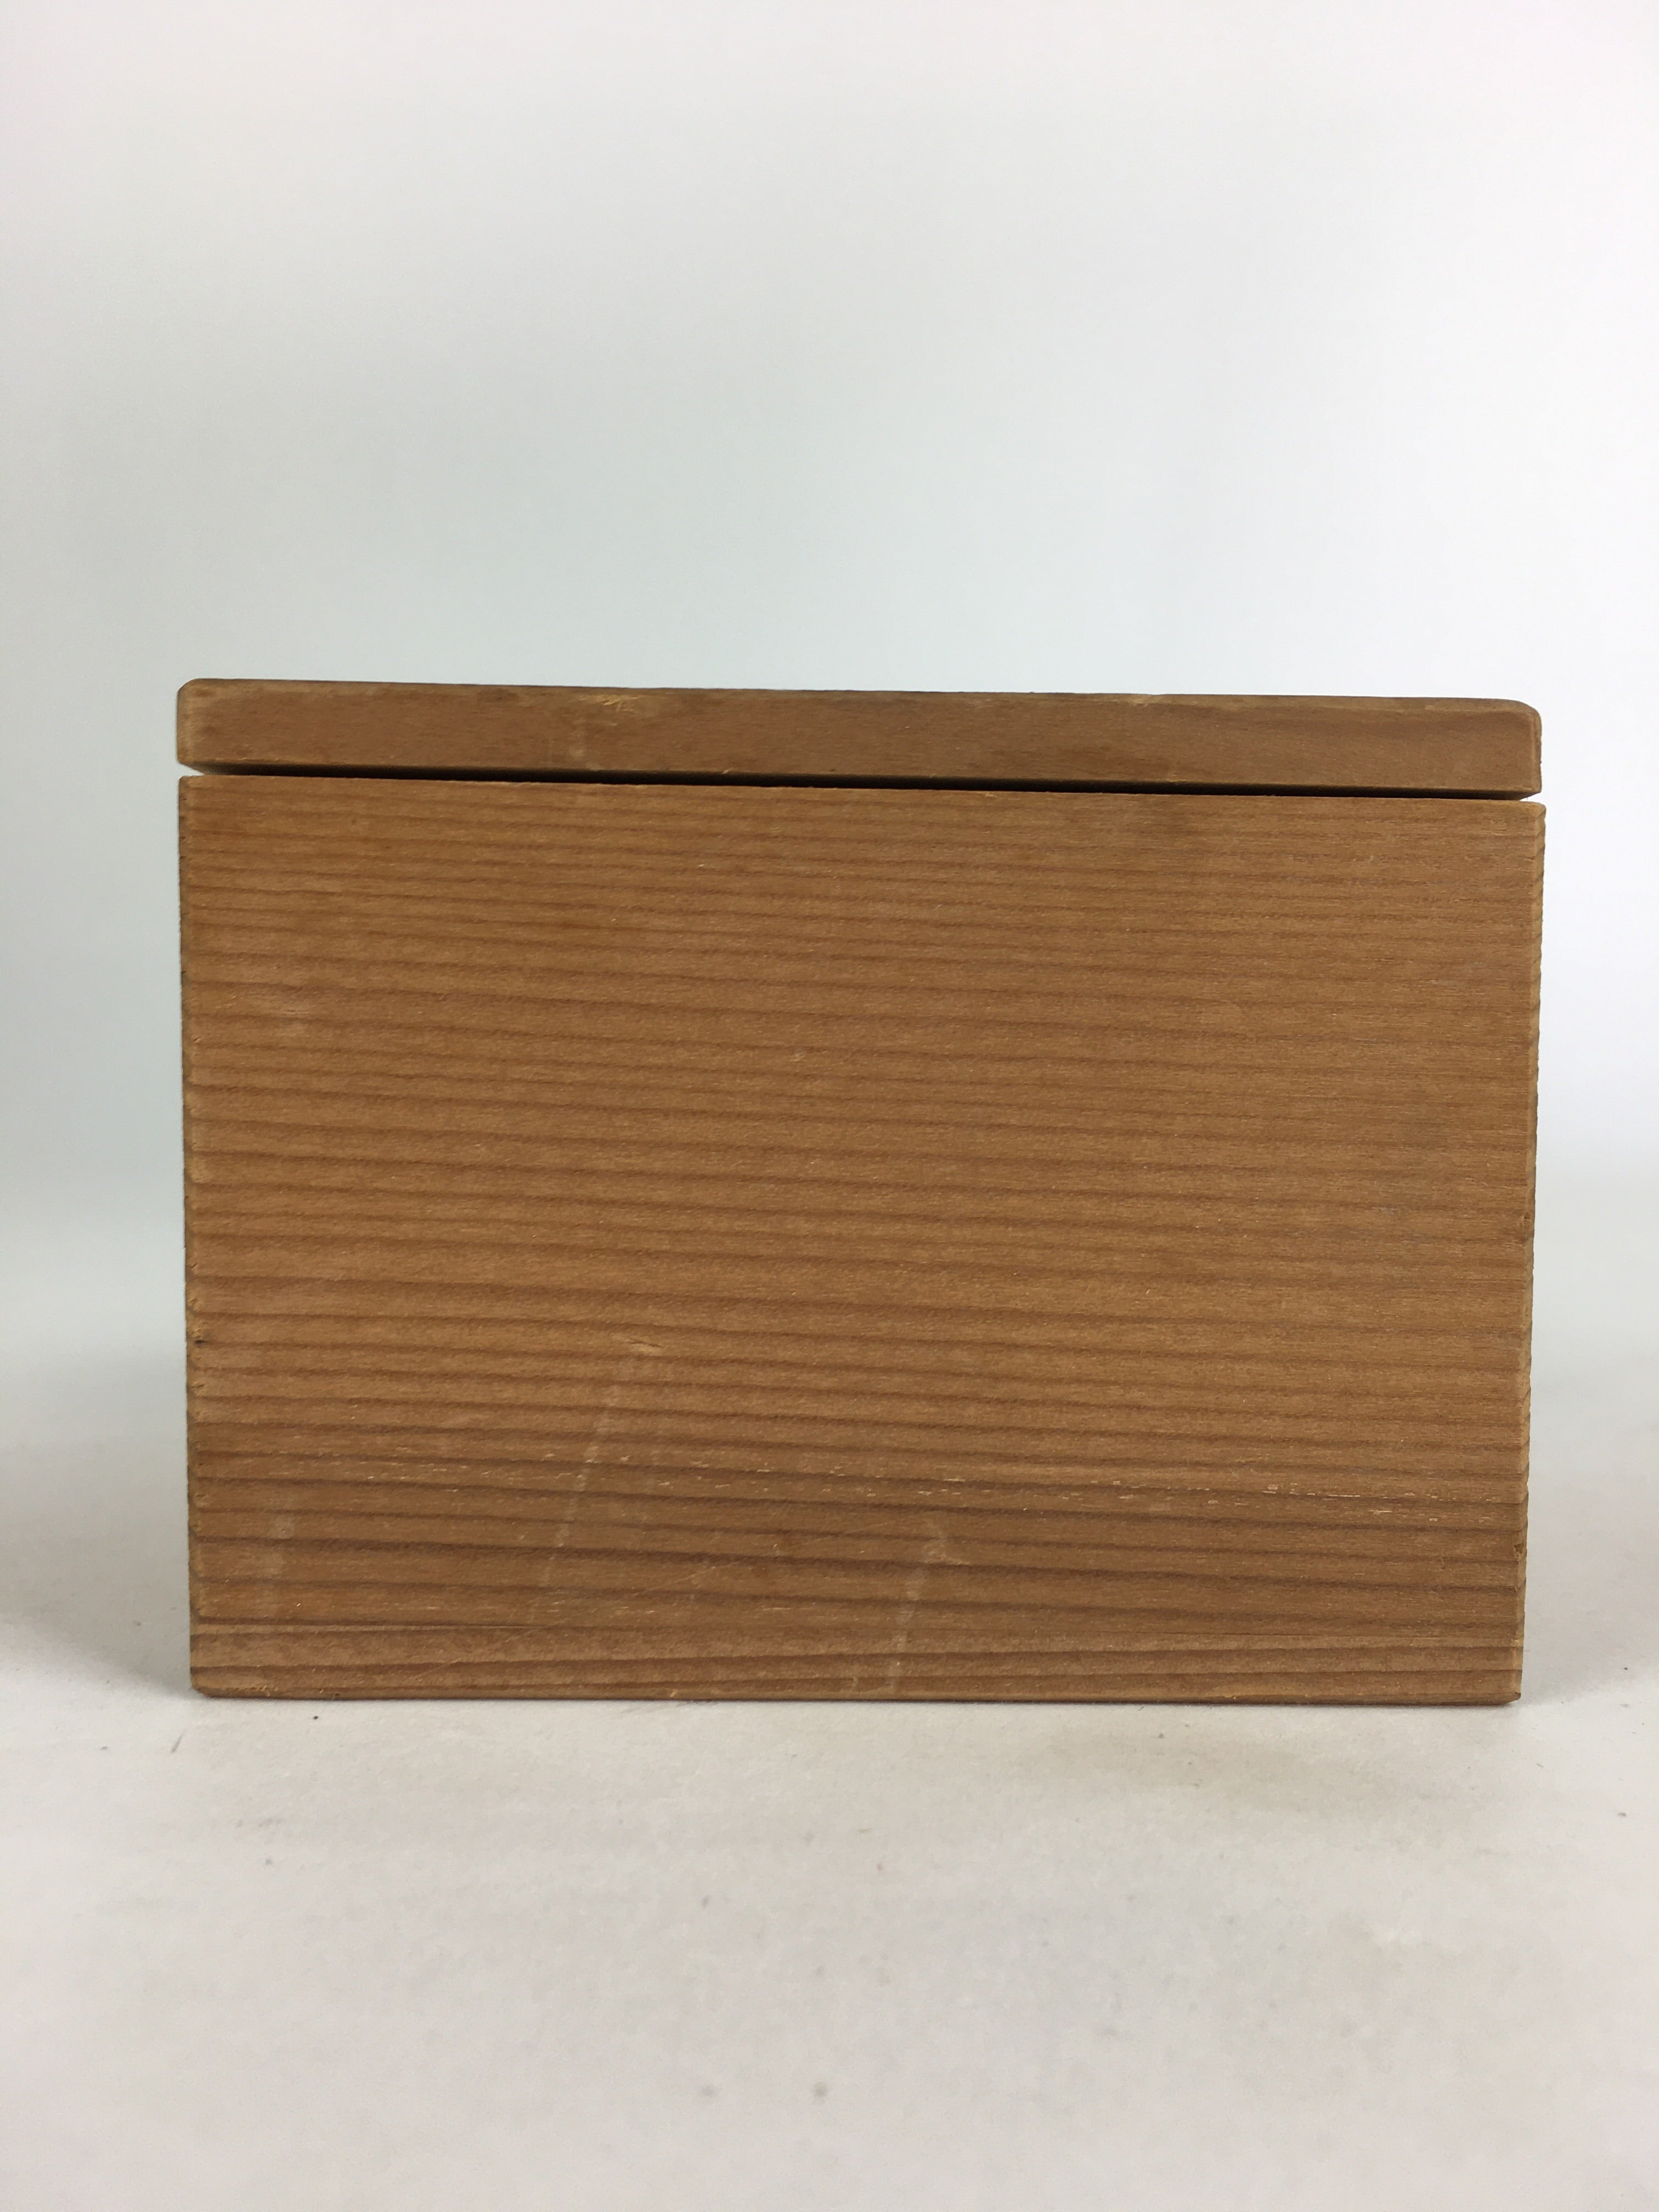 Japanese Wooden Storage Box Vtg Pottery Hako Inside 8.0x8.0x5.8cm WB930